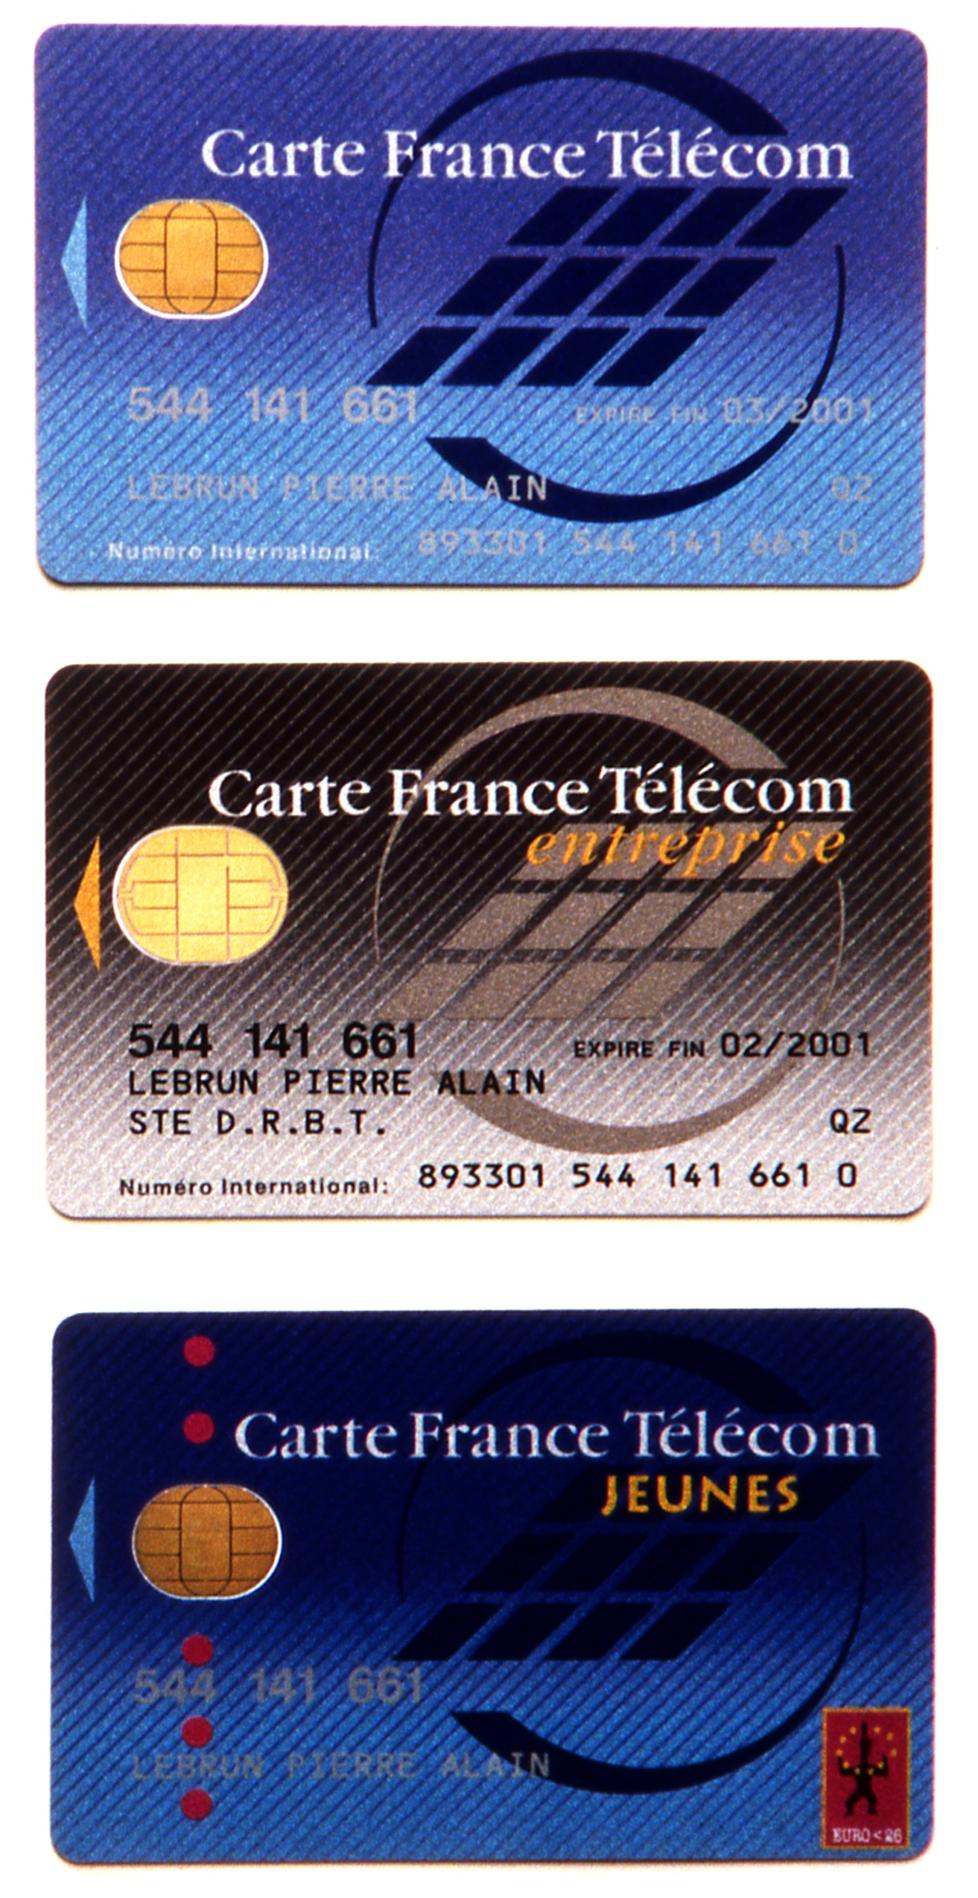 1996.06CartesFranceTelecom